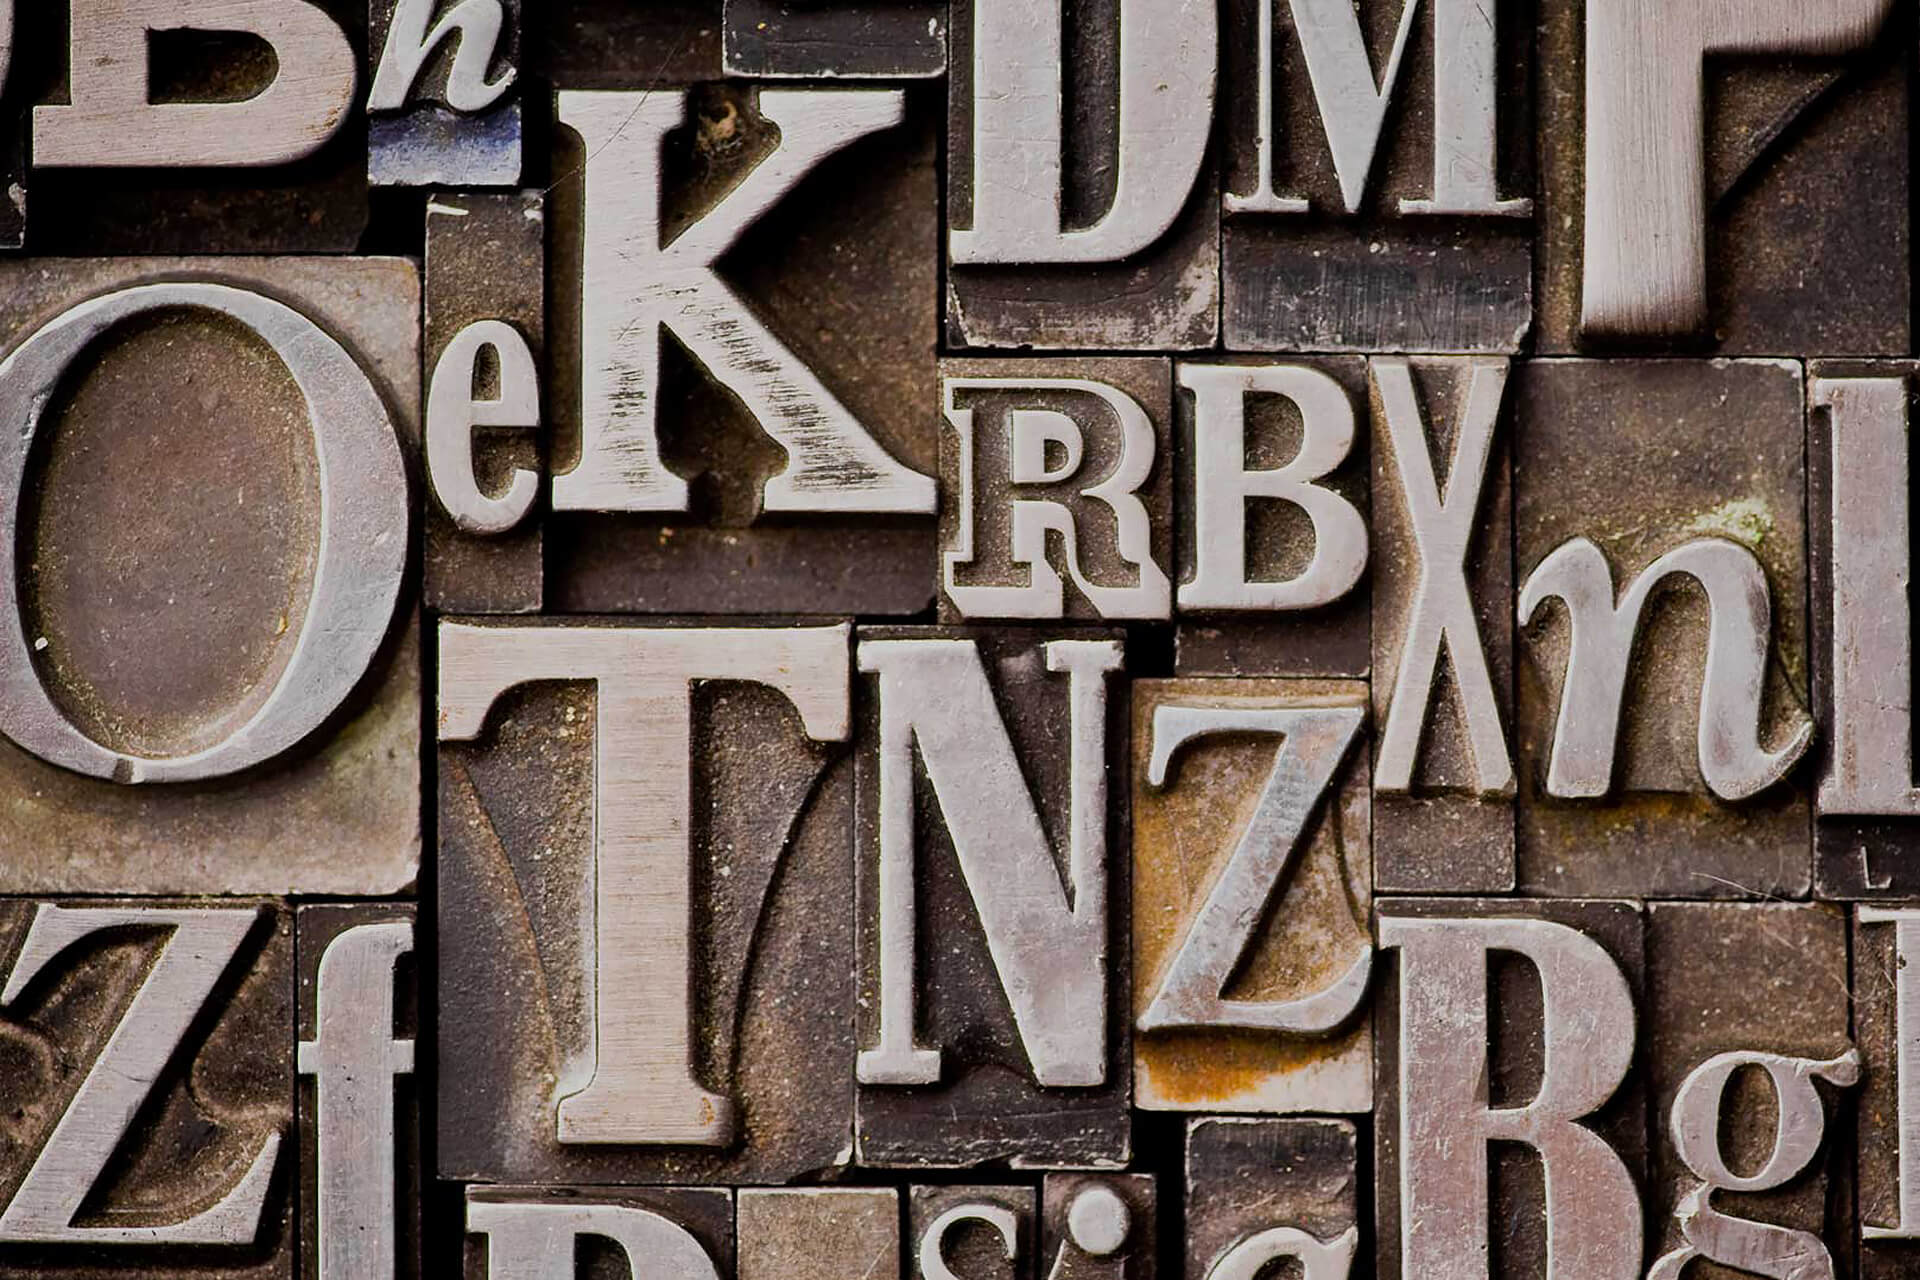 Typographic elements